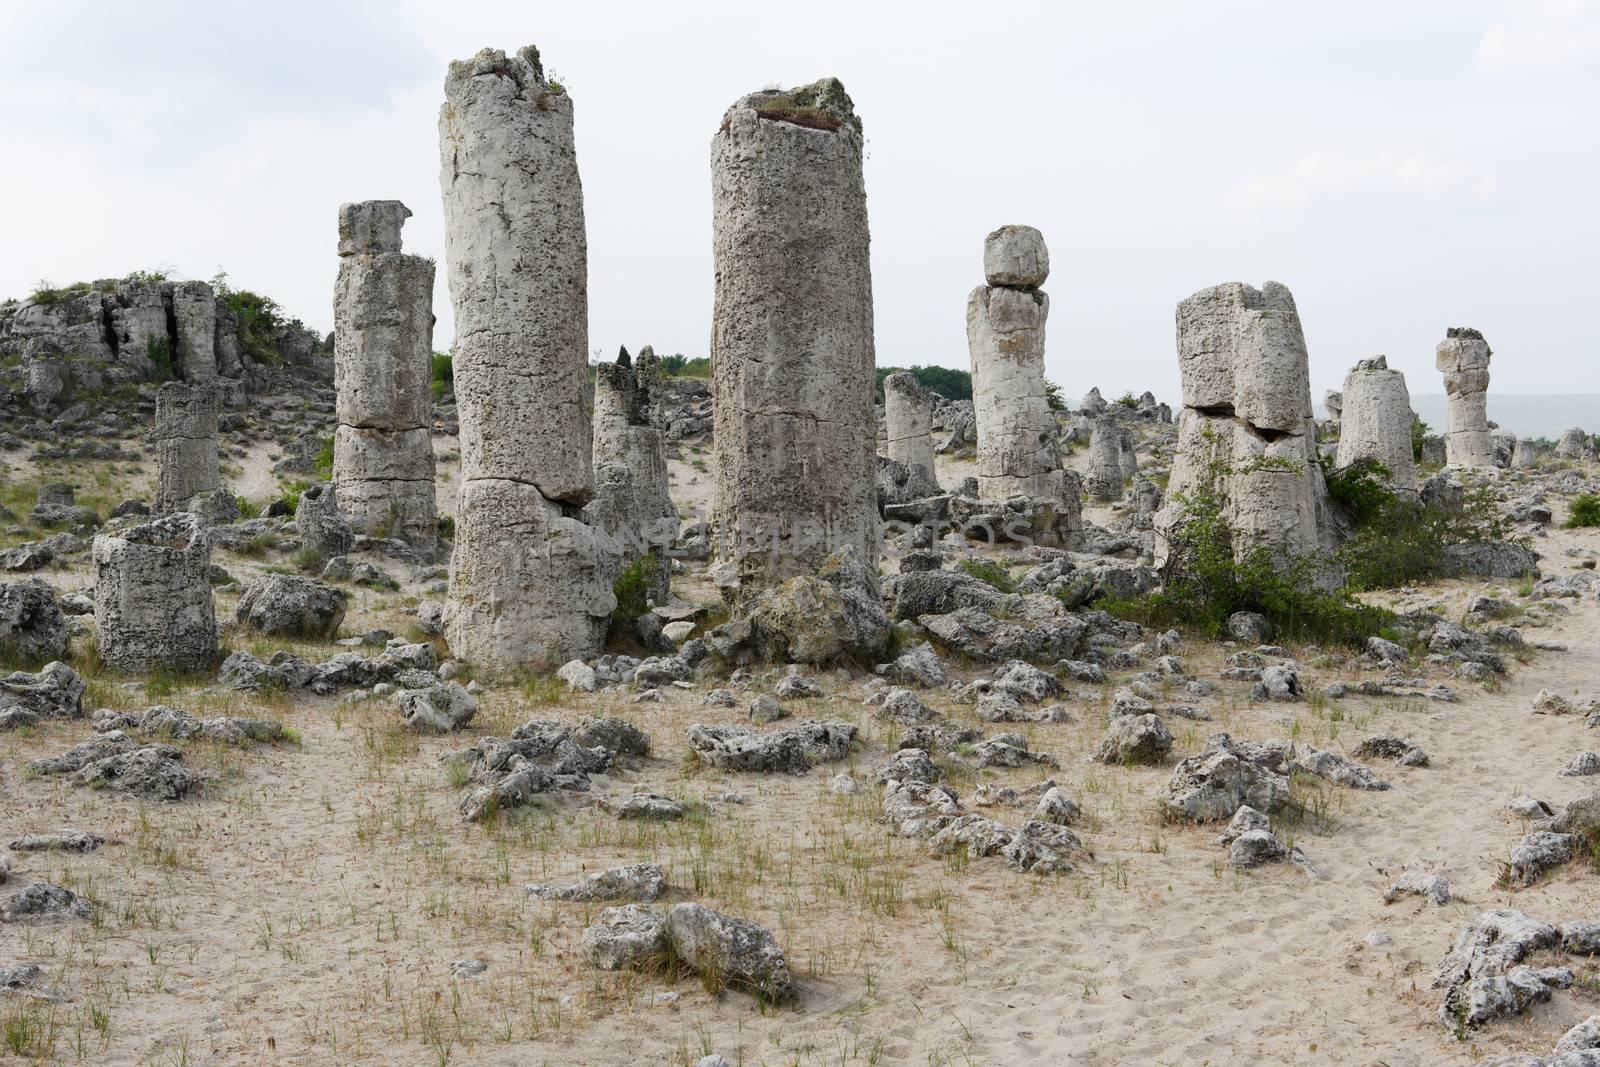 Stone phenomenon near Varna city, Bulgaria